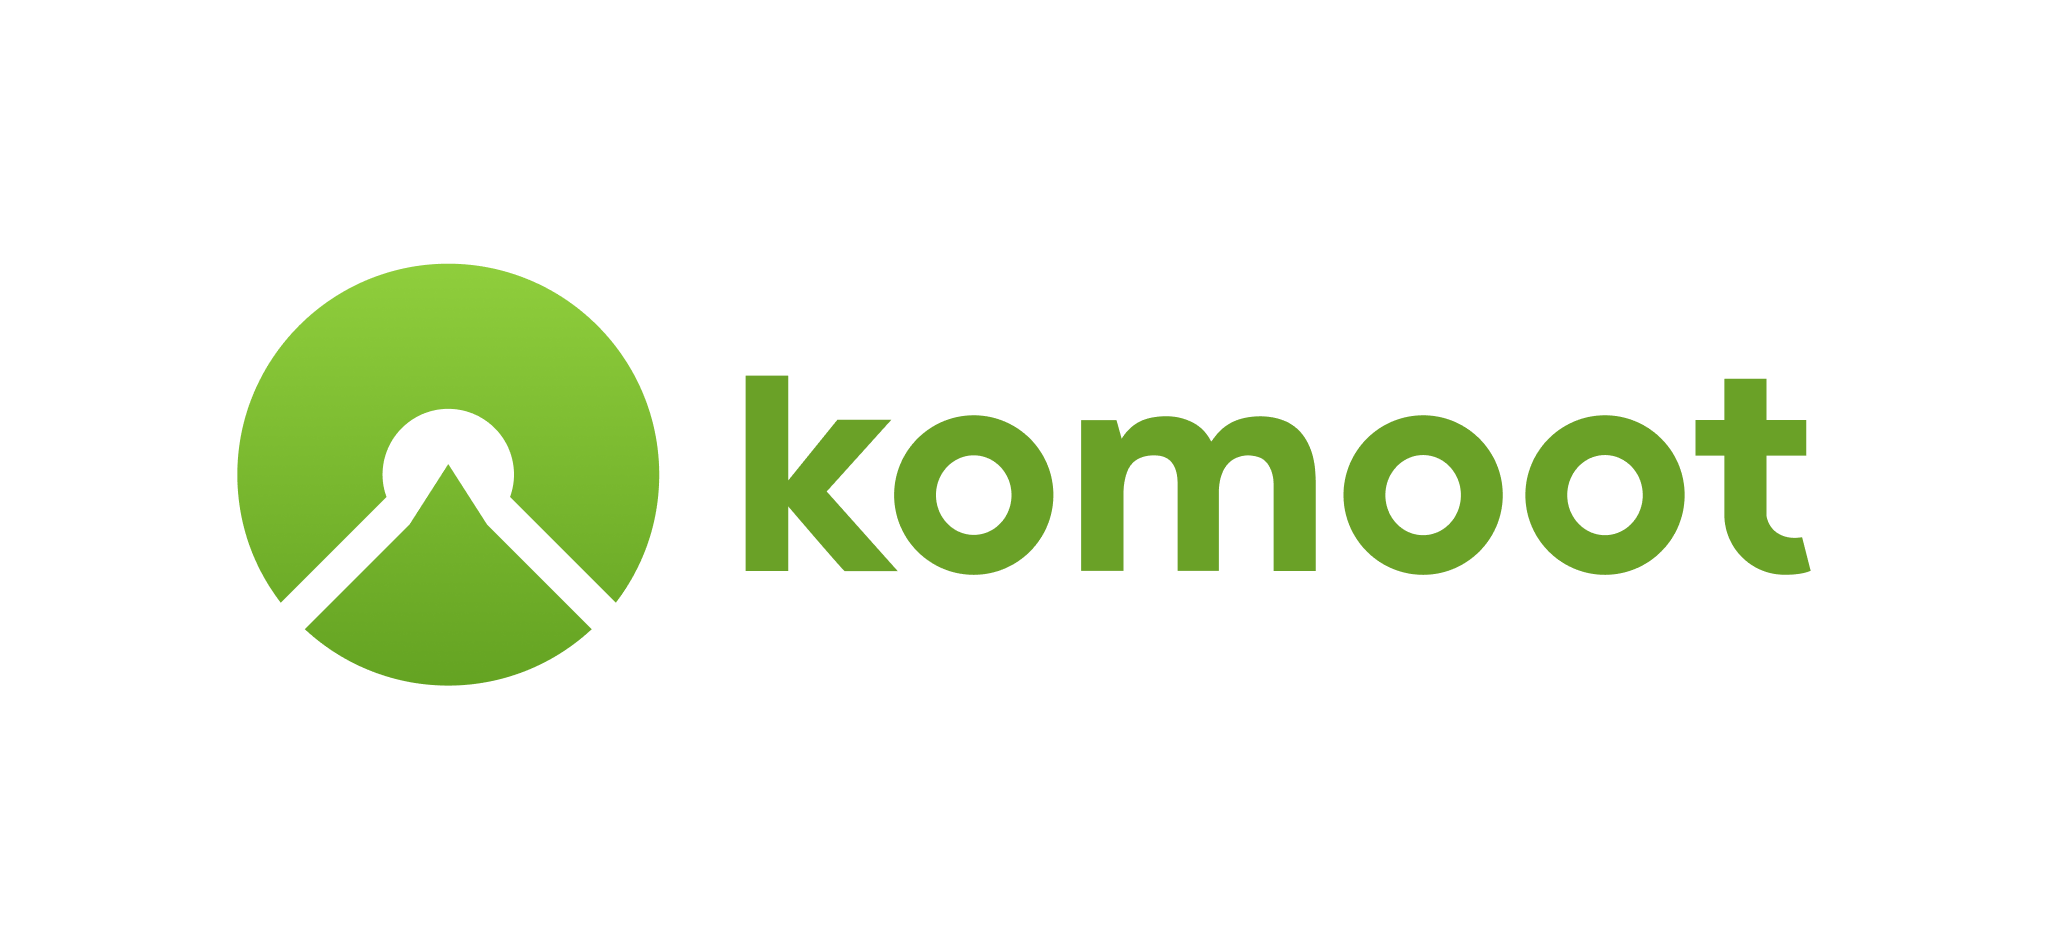 358913-logo_komoot_2_green - RGB (v2.1)-74a410-original-1594397399.png